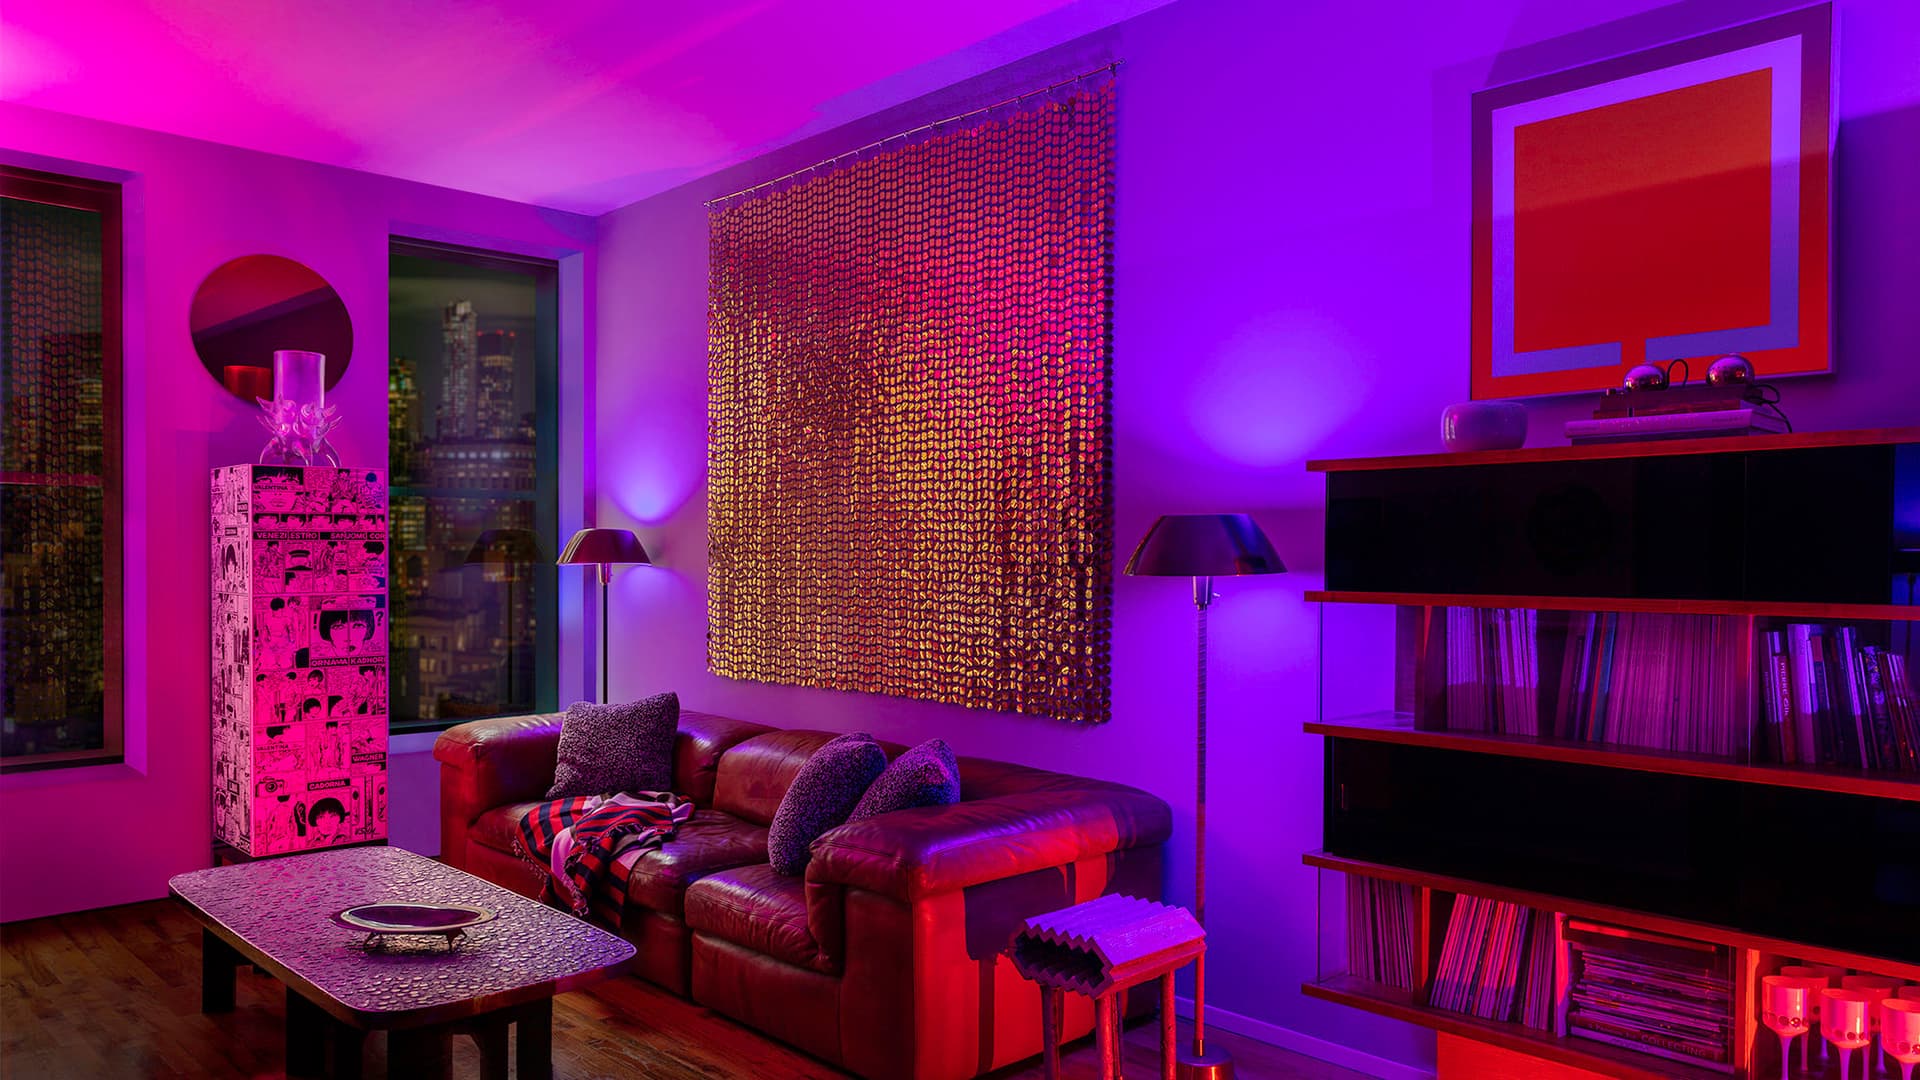 Нью-йоркская квартира с RGB подсветкой – проект дизайнеров Райана Лоусона и Шона Робинса